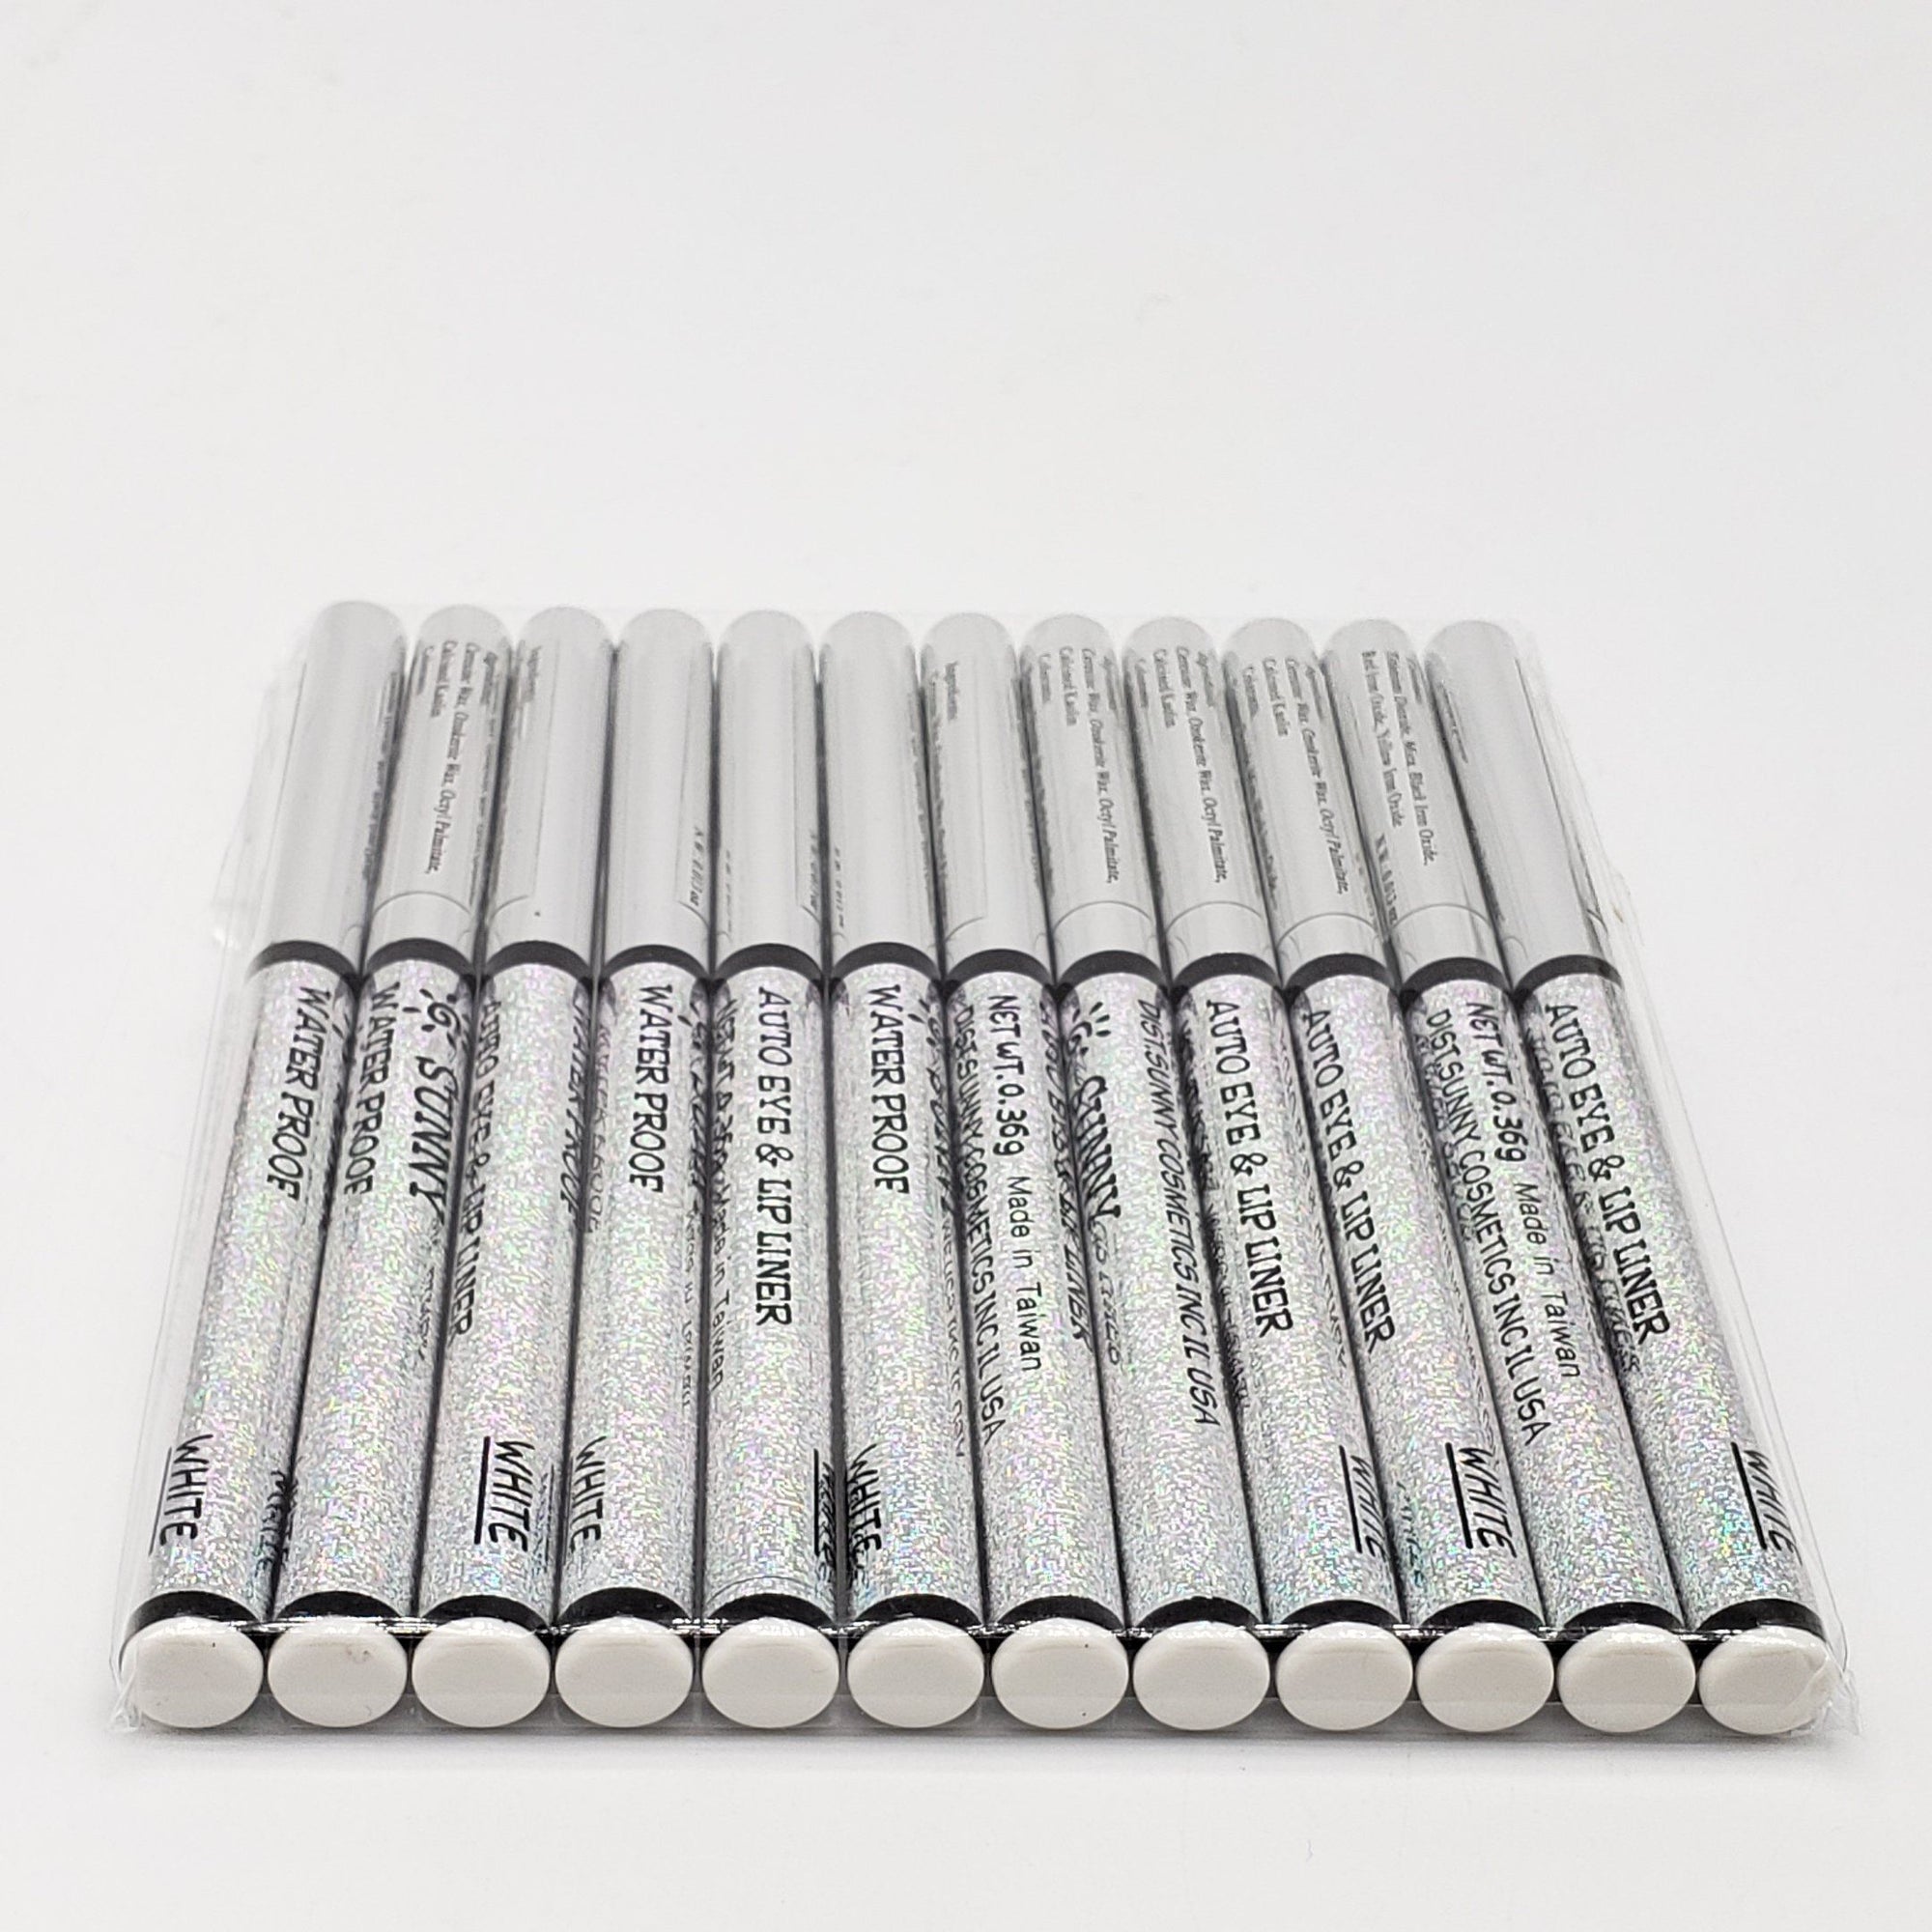 Color Liner Pencils - 12 Pc